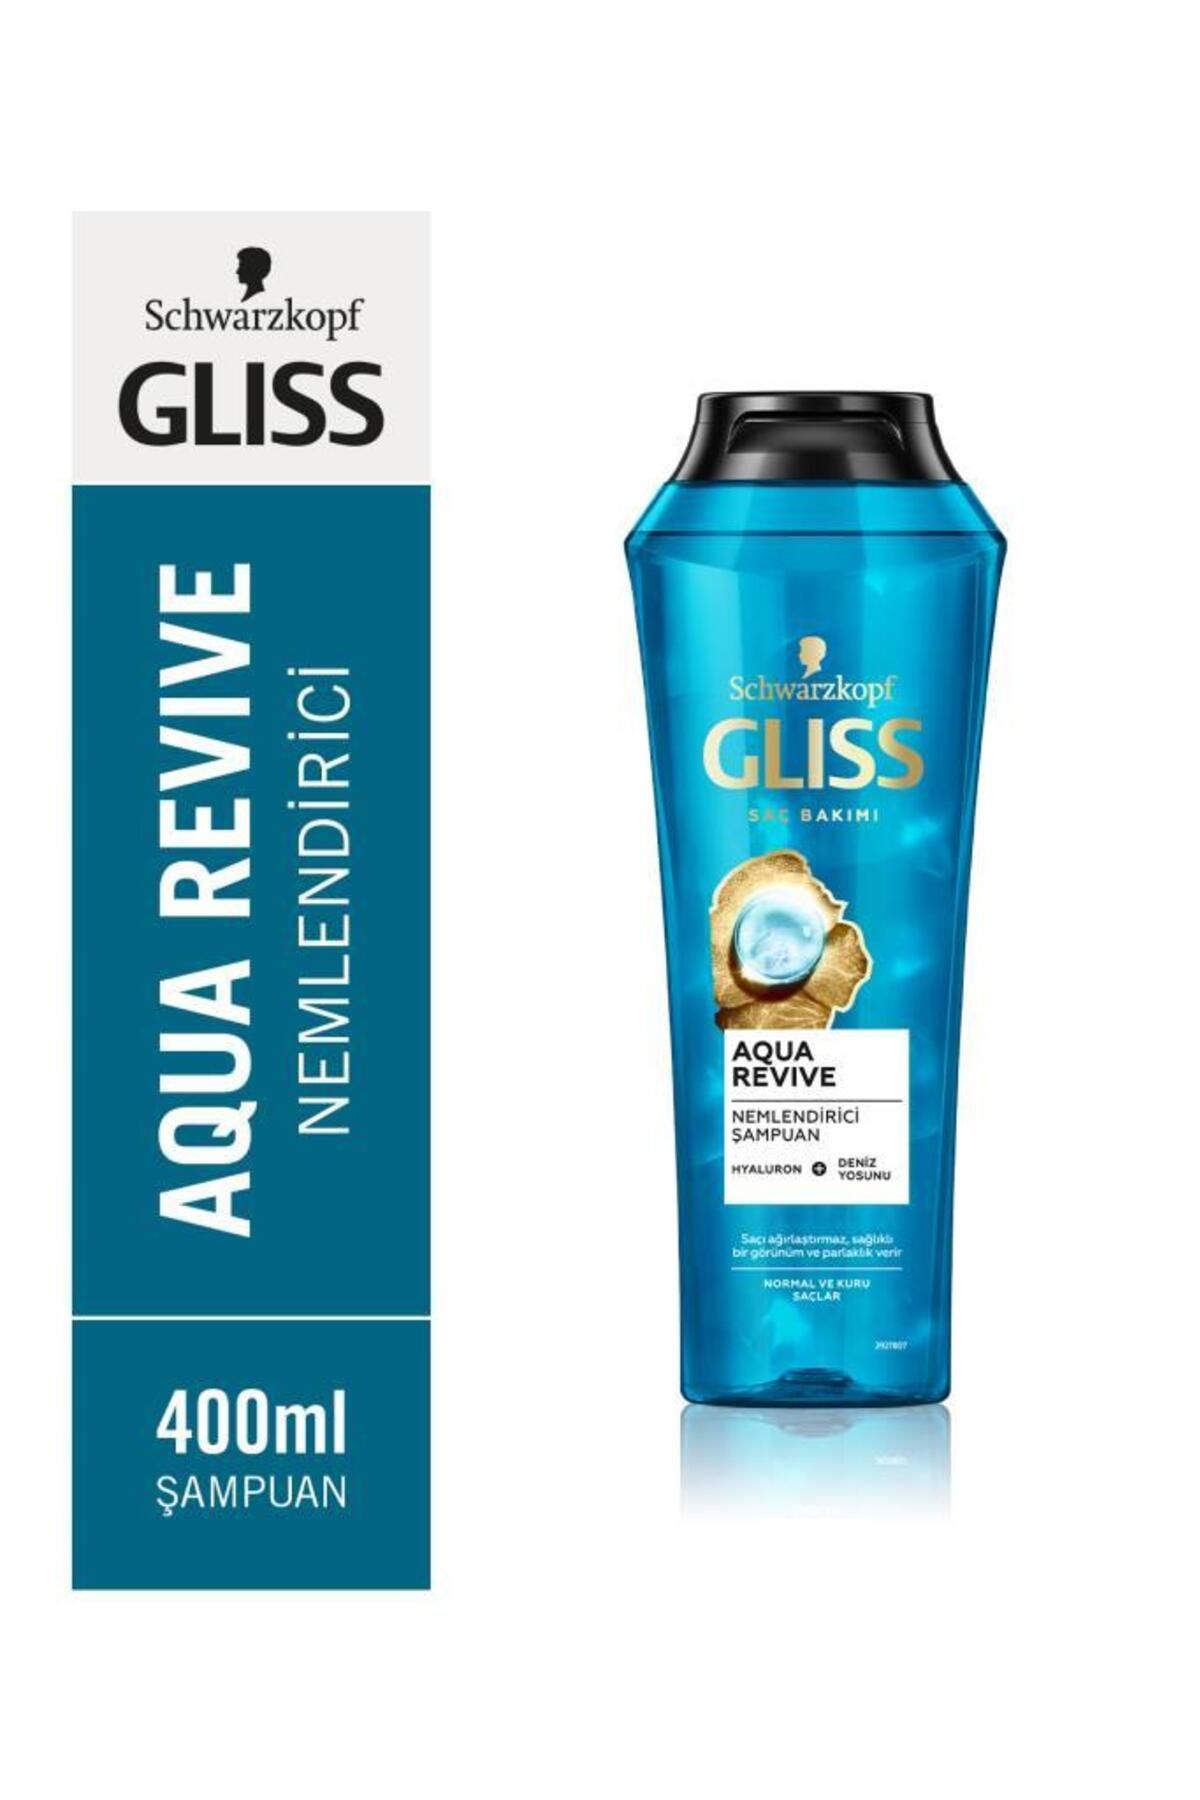 Gliss Aqua Revive Hyaluron ve Deniz Yosunu içeren Nemlendirici Şampuan 400ml